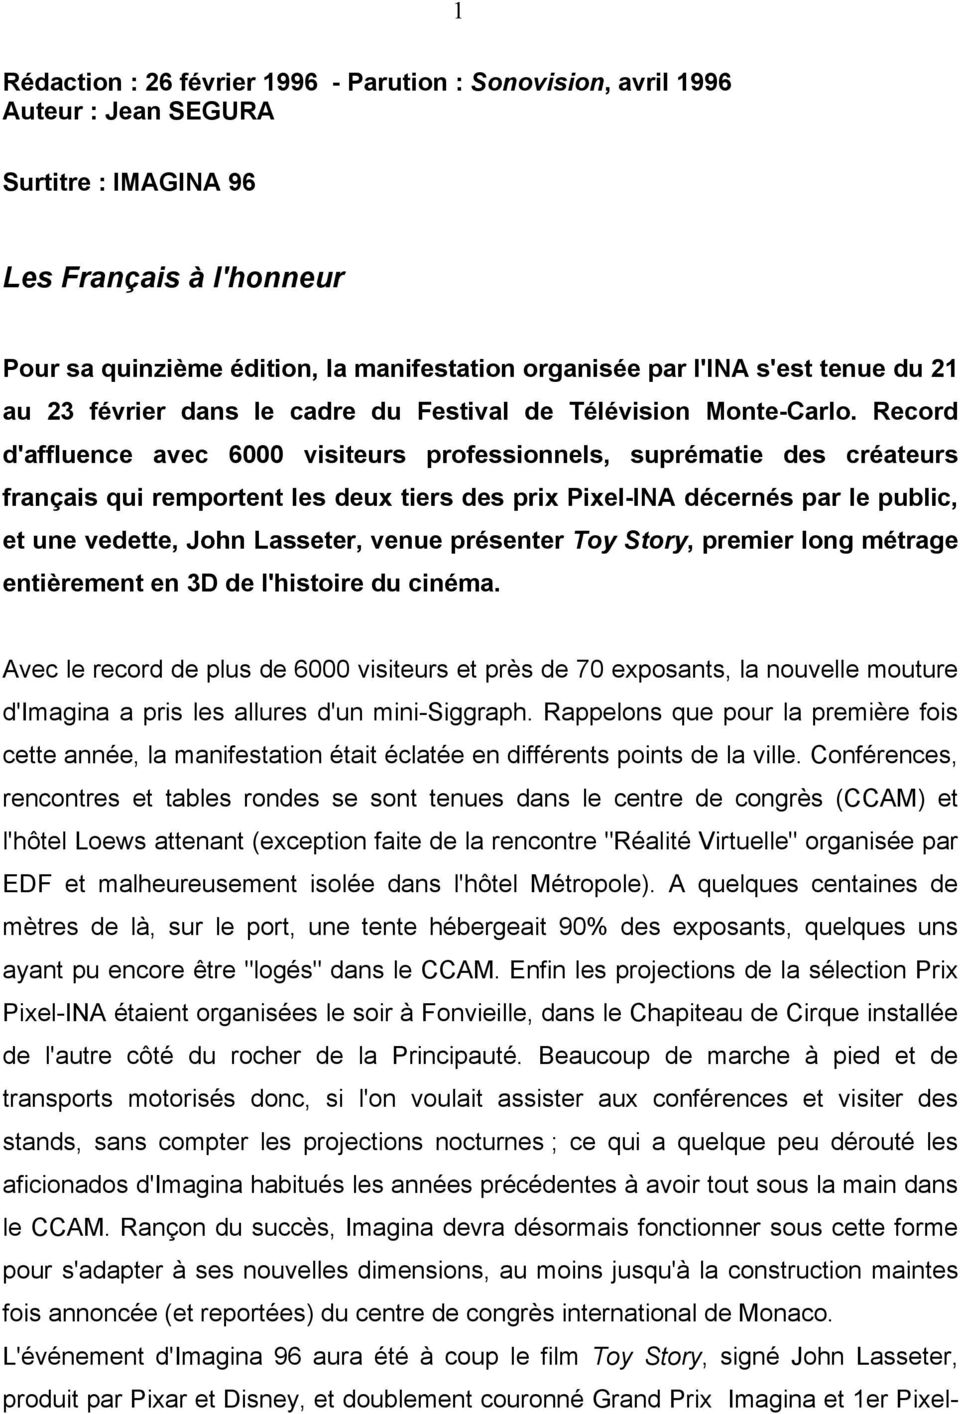 Record d'affluence avec 6000 visiteurs professionnels, suprématie des créateurs français qui remportent les deux tiers des prix Pixel-INA décernés par le public, et une vedette, John Lasseter, venue